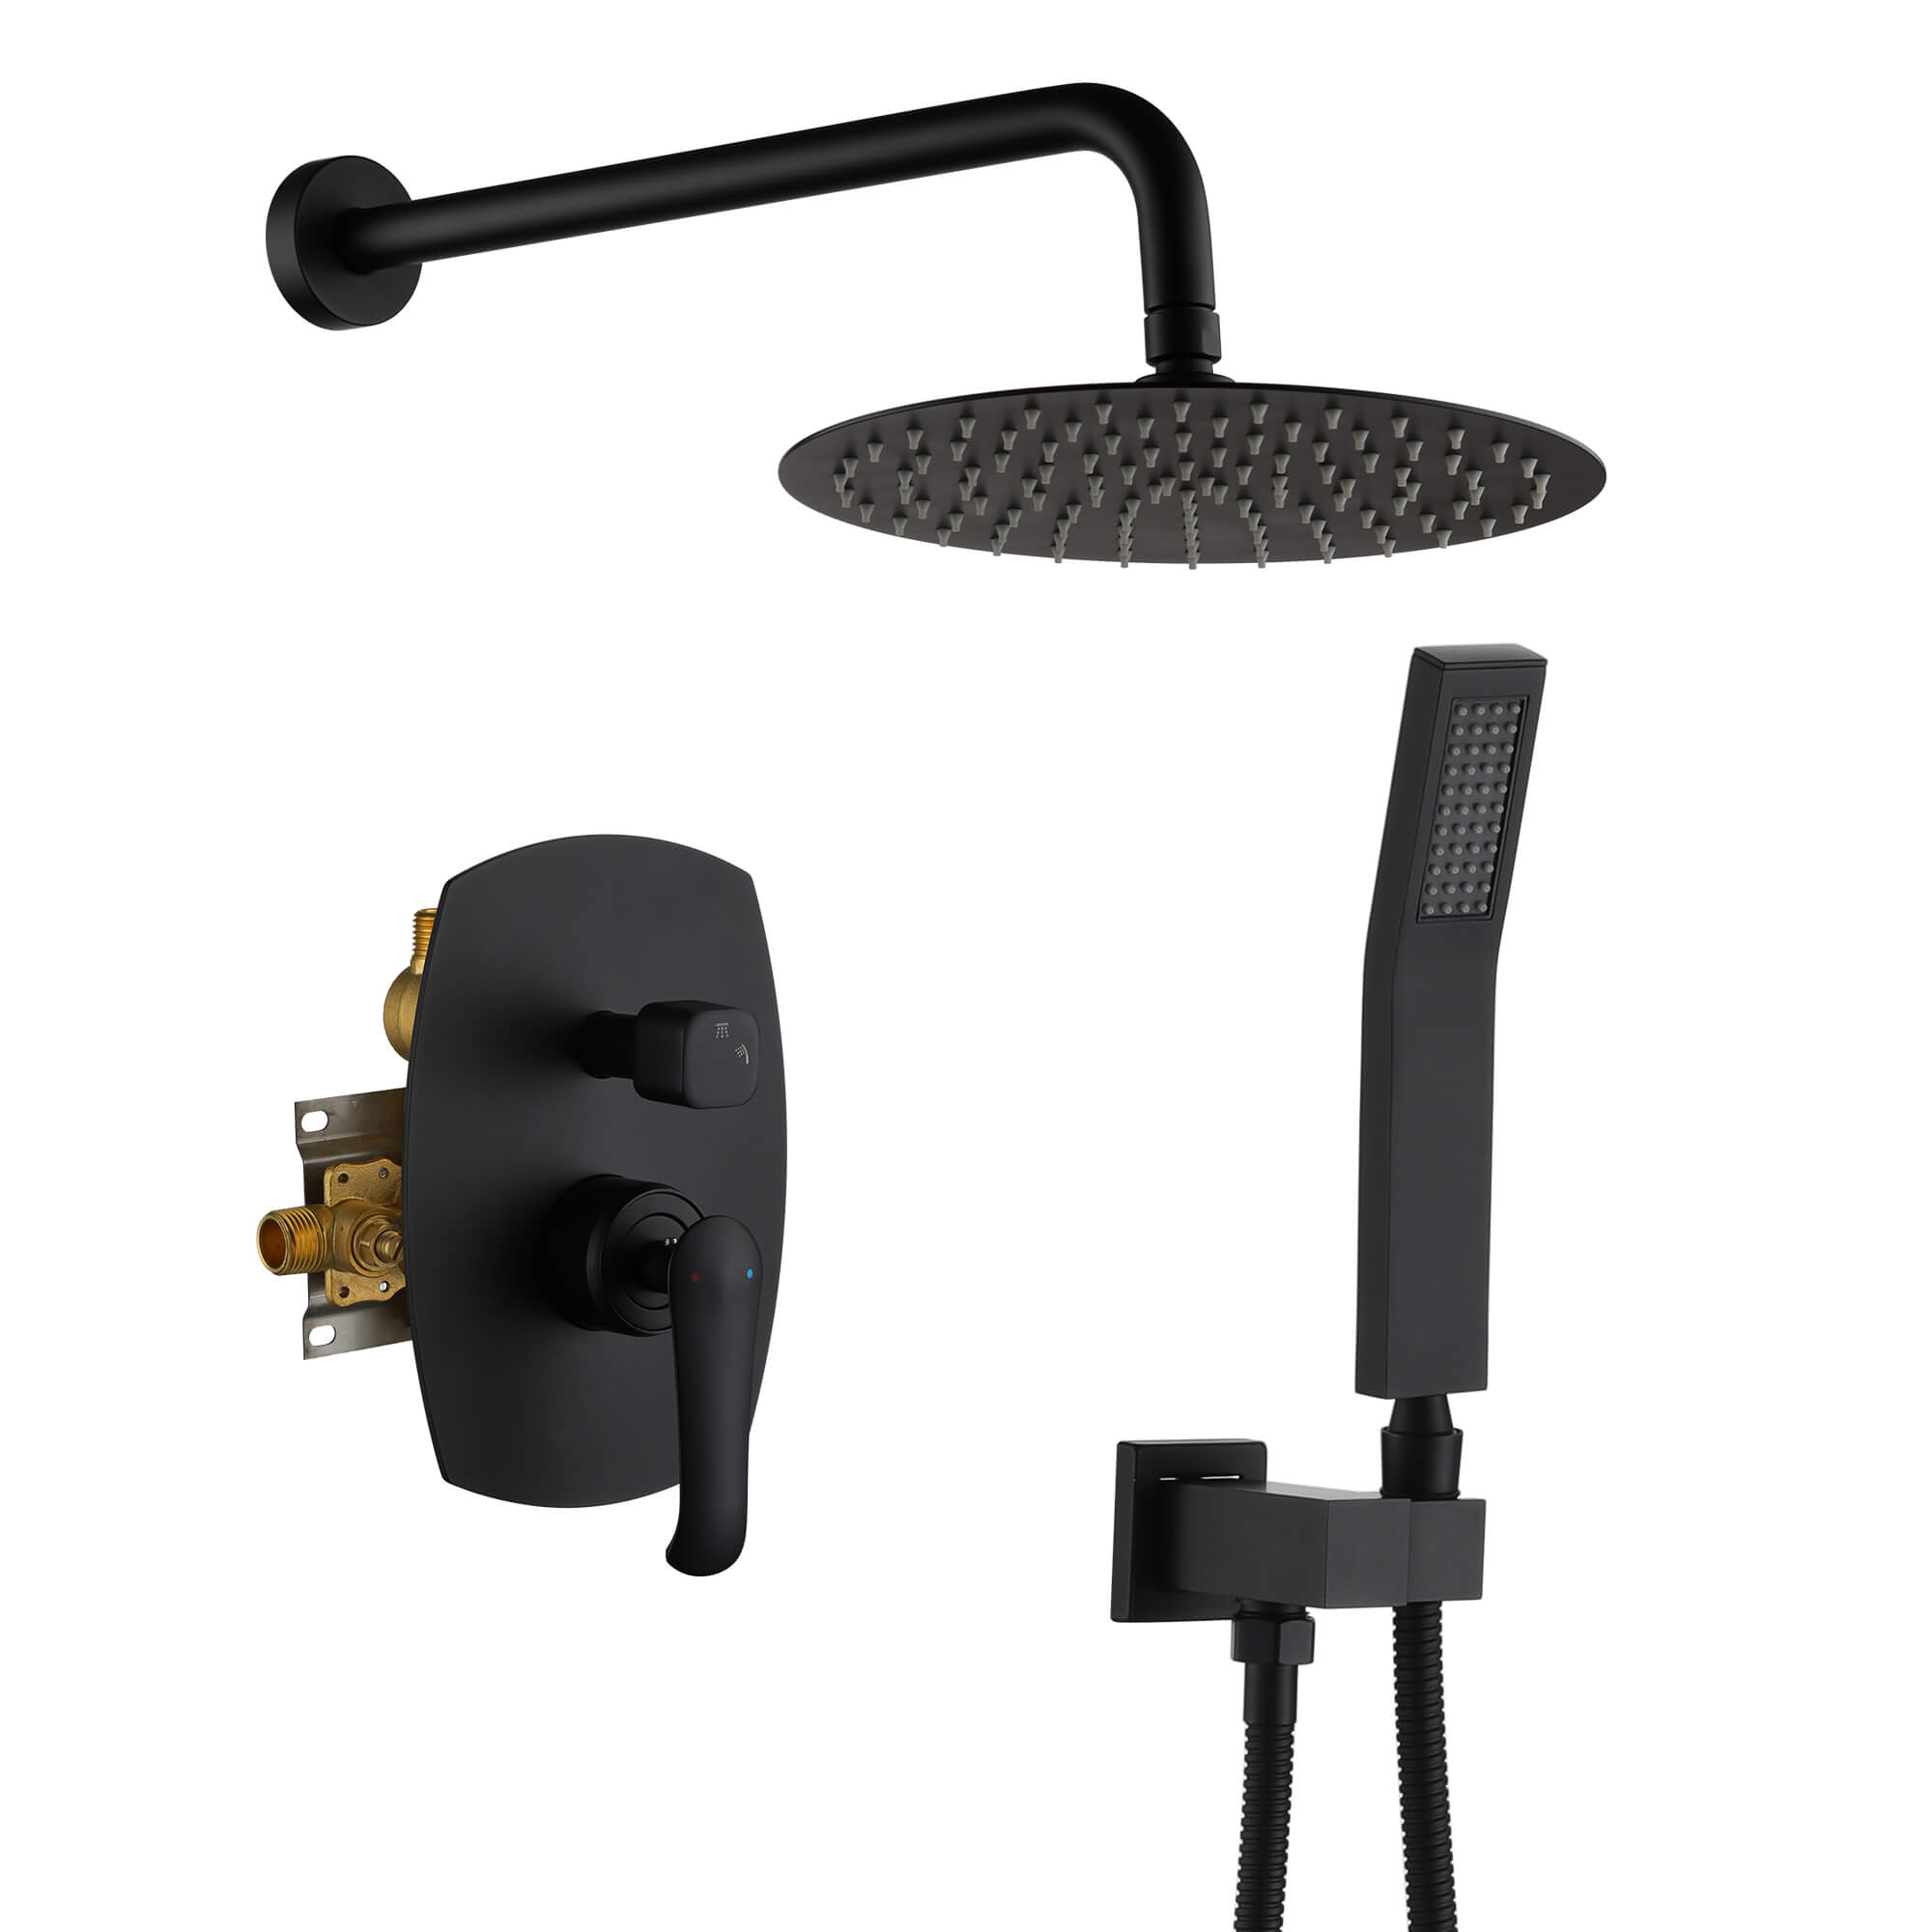 Casainc Matte Black Round Built-in Shower System with Handheld Shower